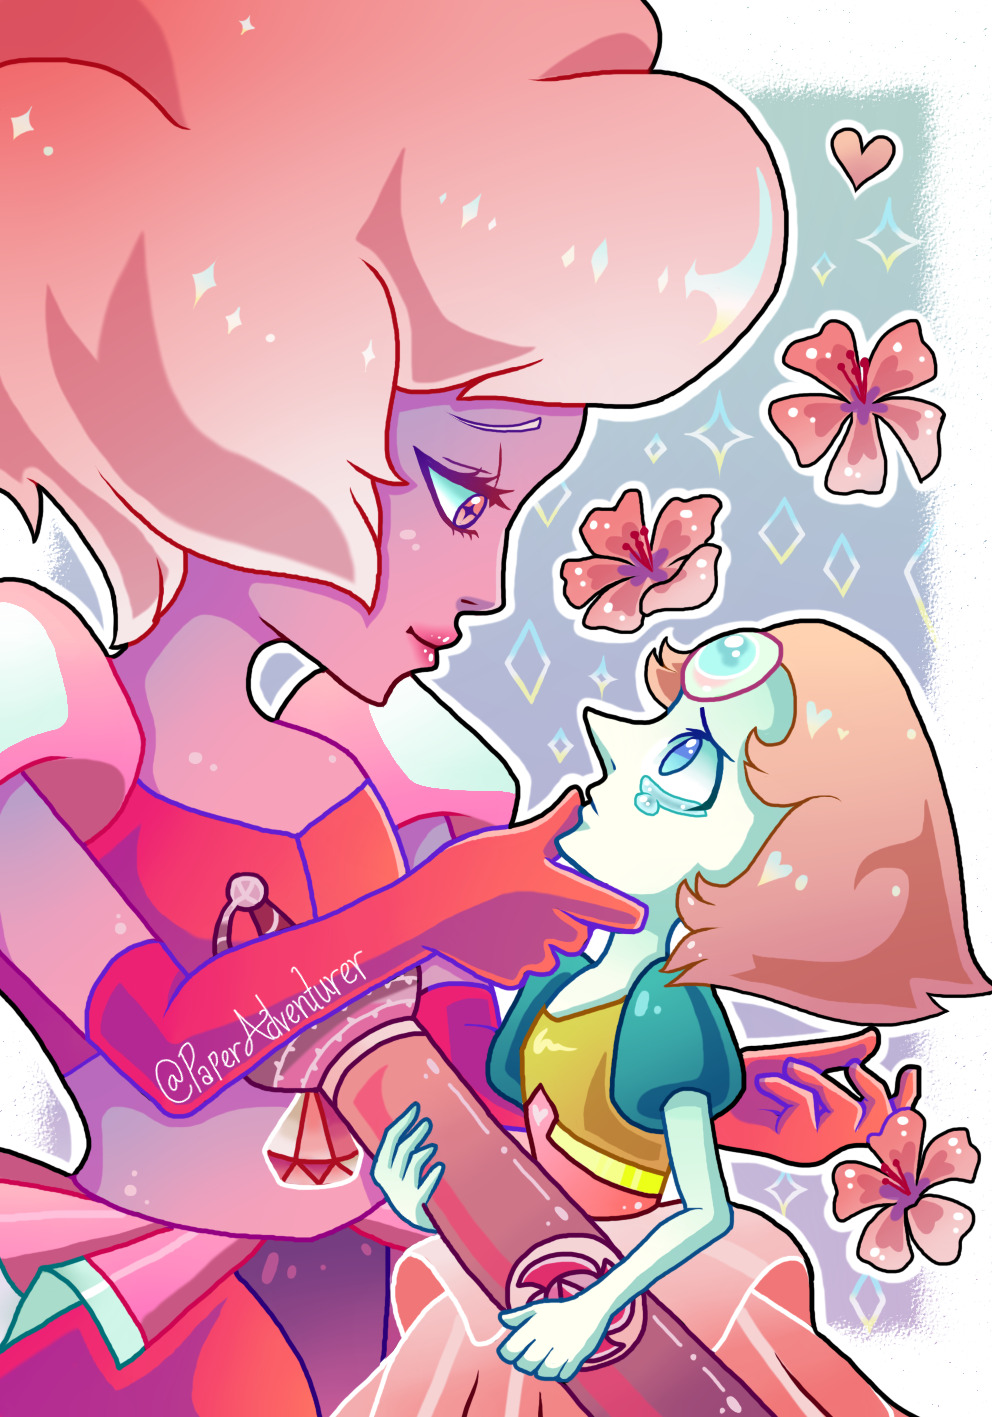 Pearl deserves better